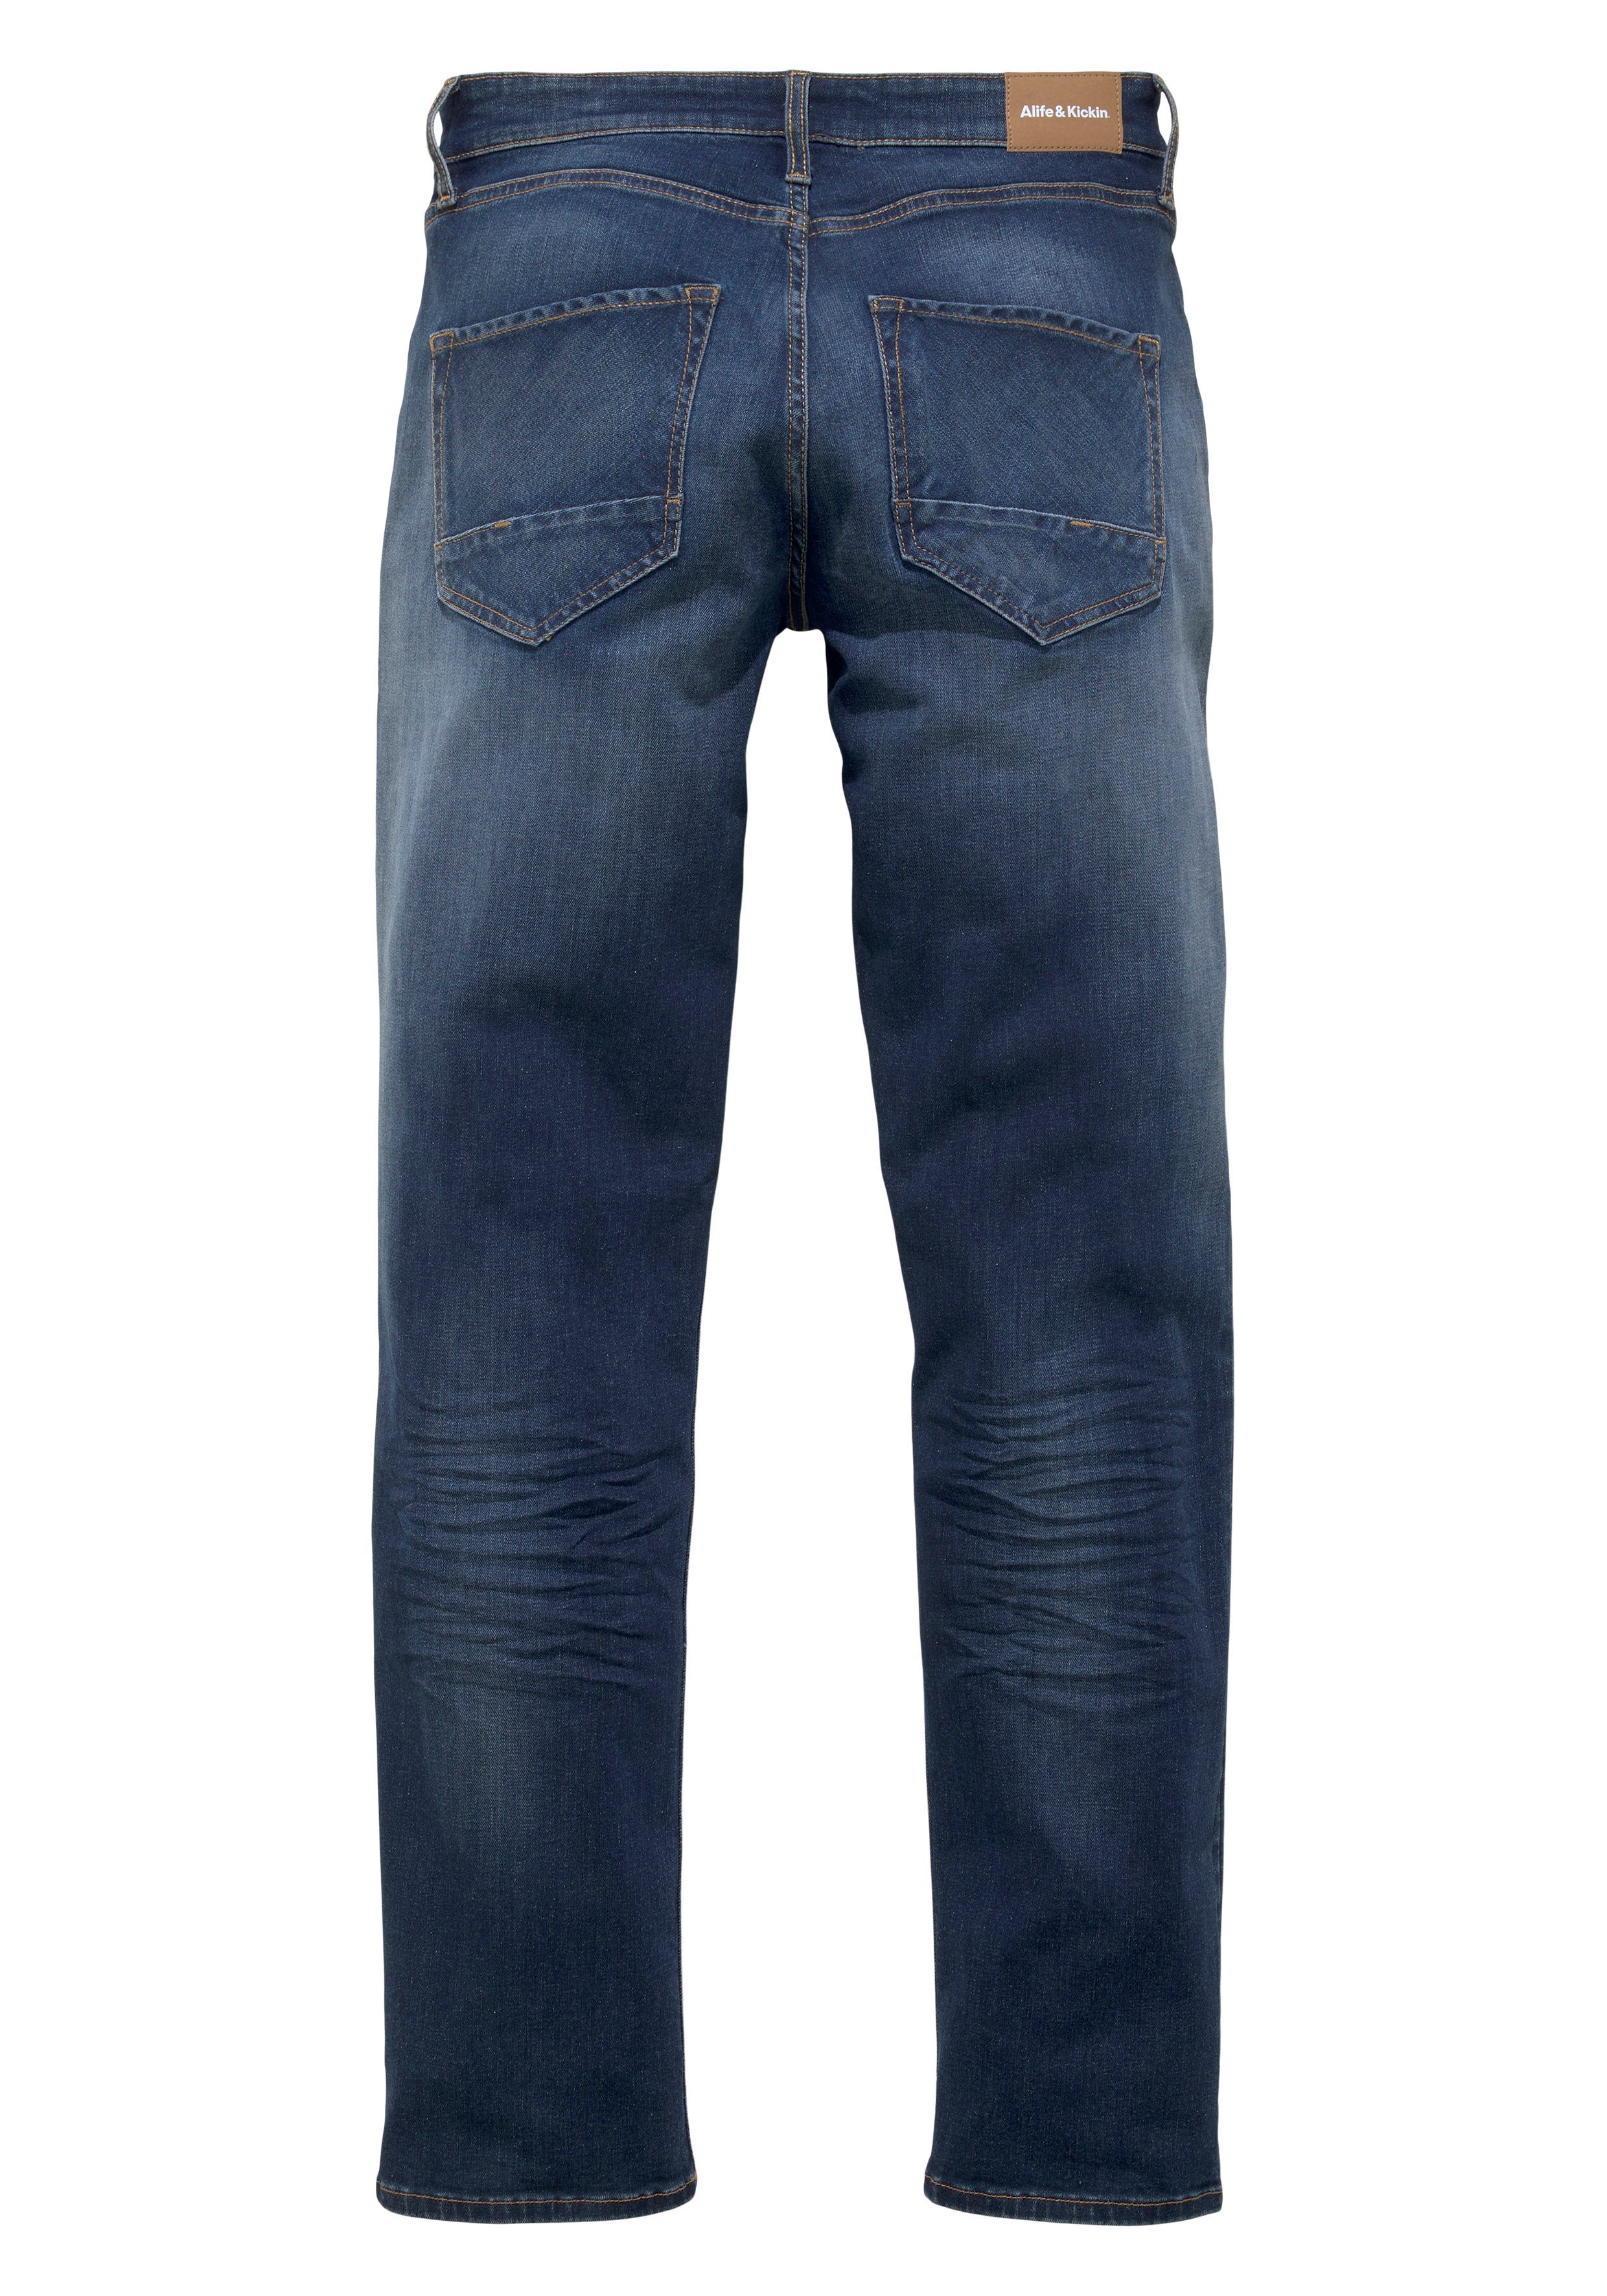 dark blue Straight-Jeans Kickin wassersparende & Ökologische, durch Alife Wash AlanAK Ozon Produktion